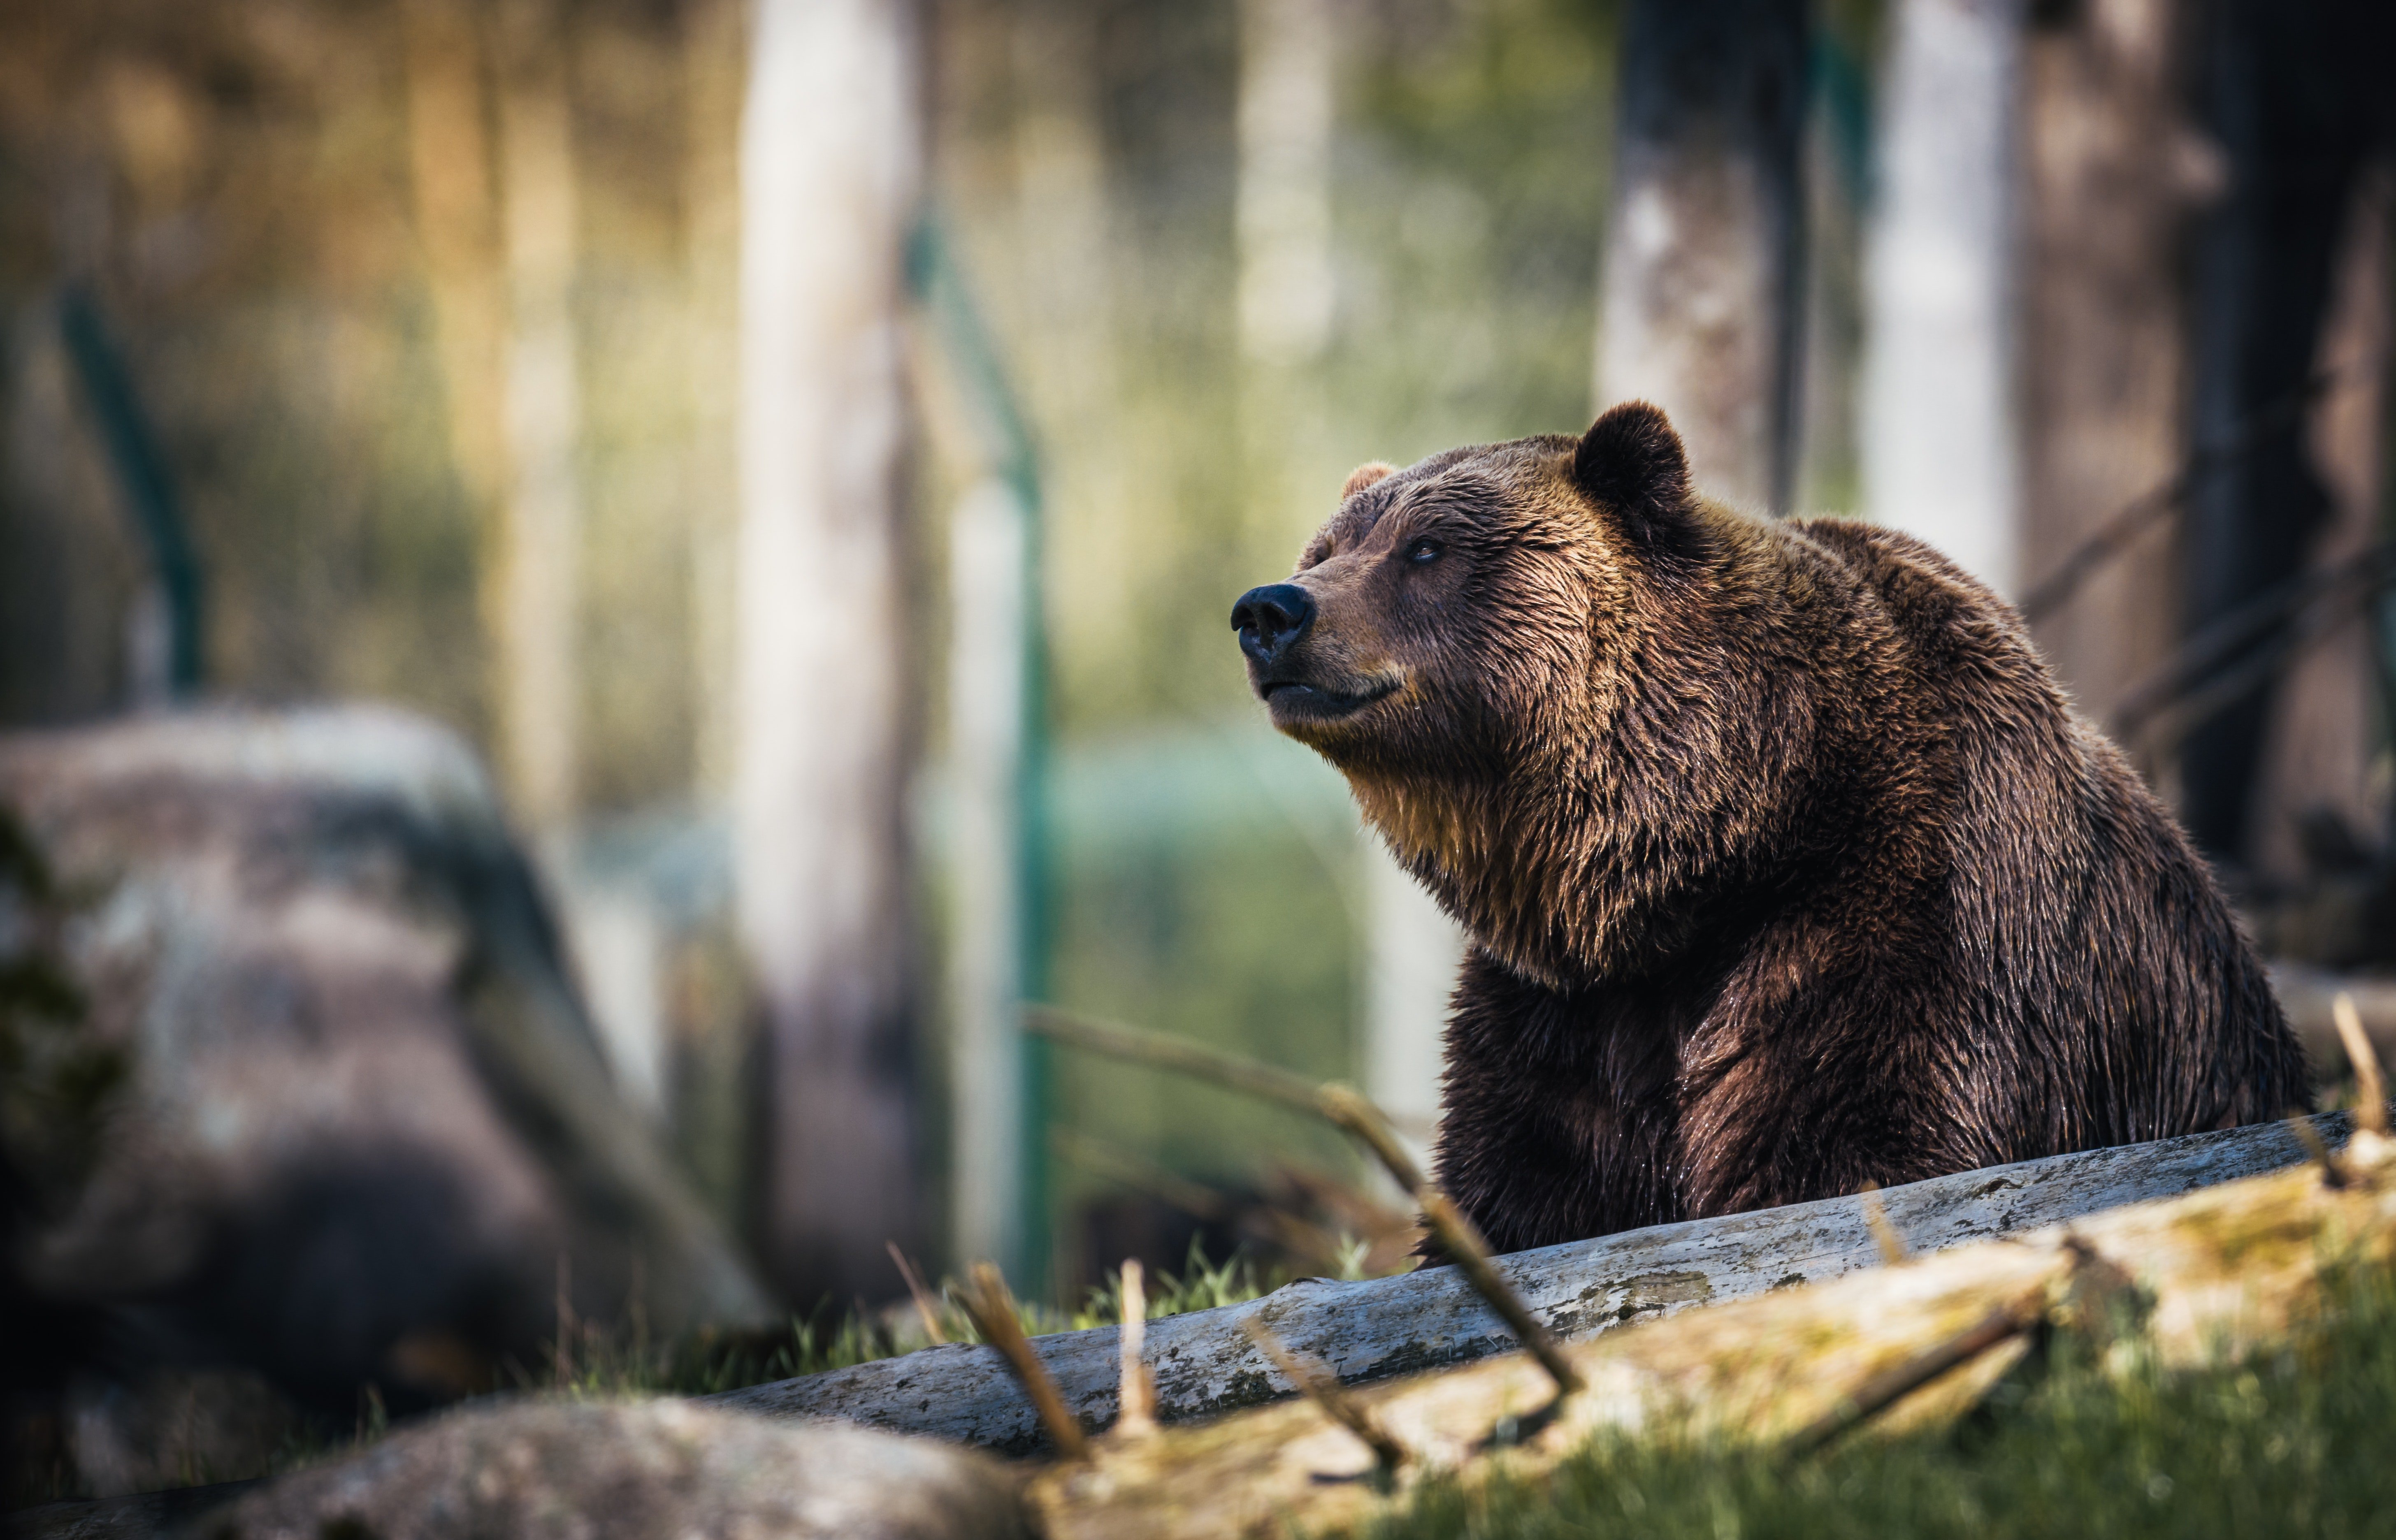 A bear in the forest. | Pexels/ Janko Ferlic